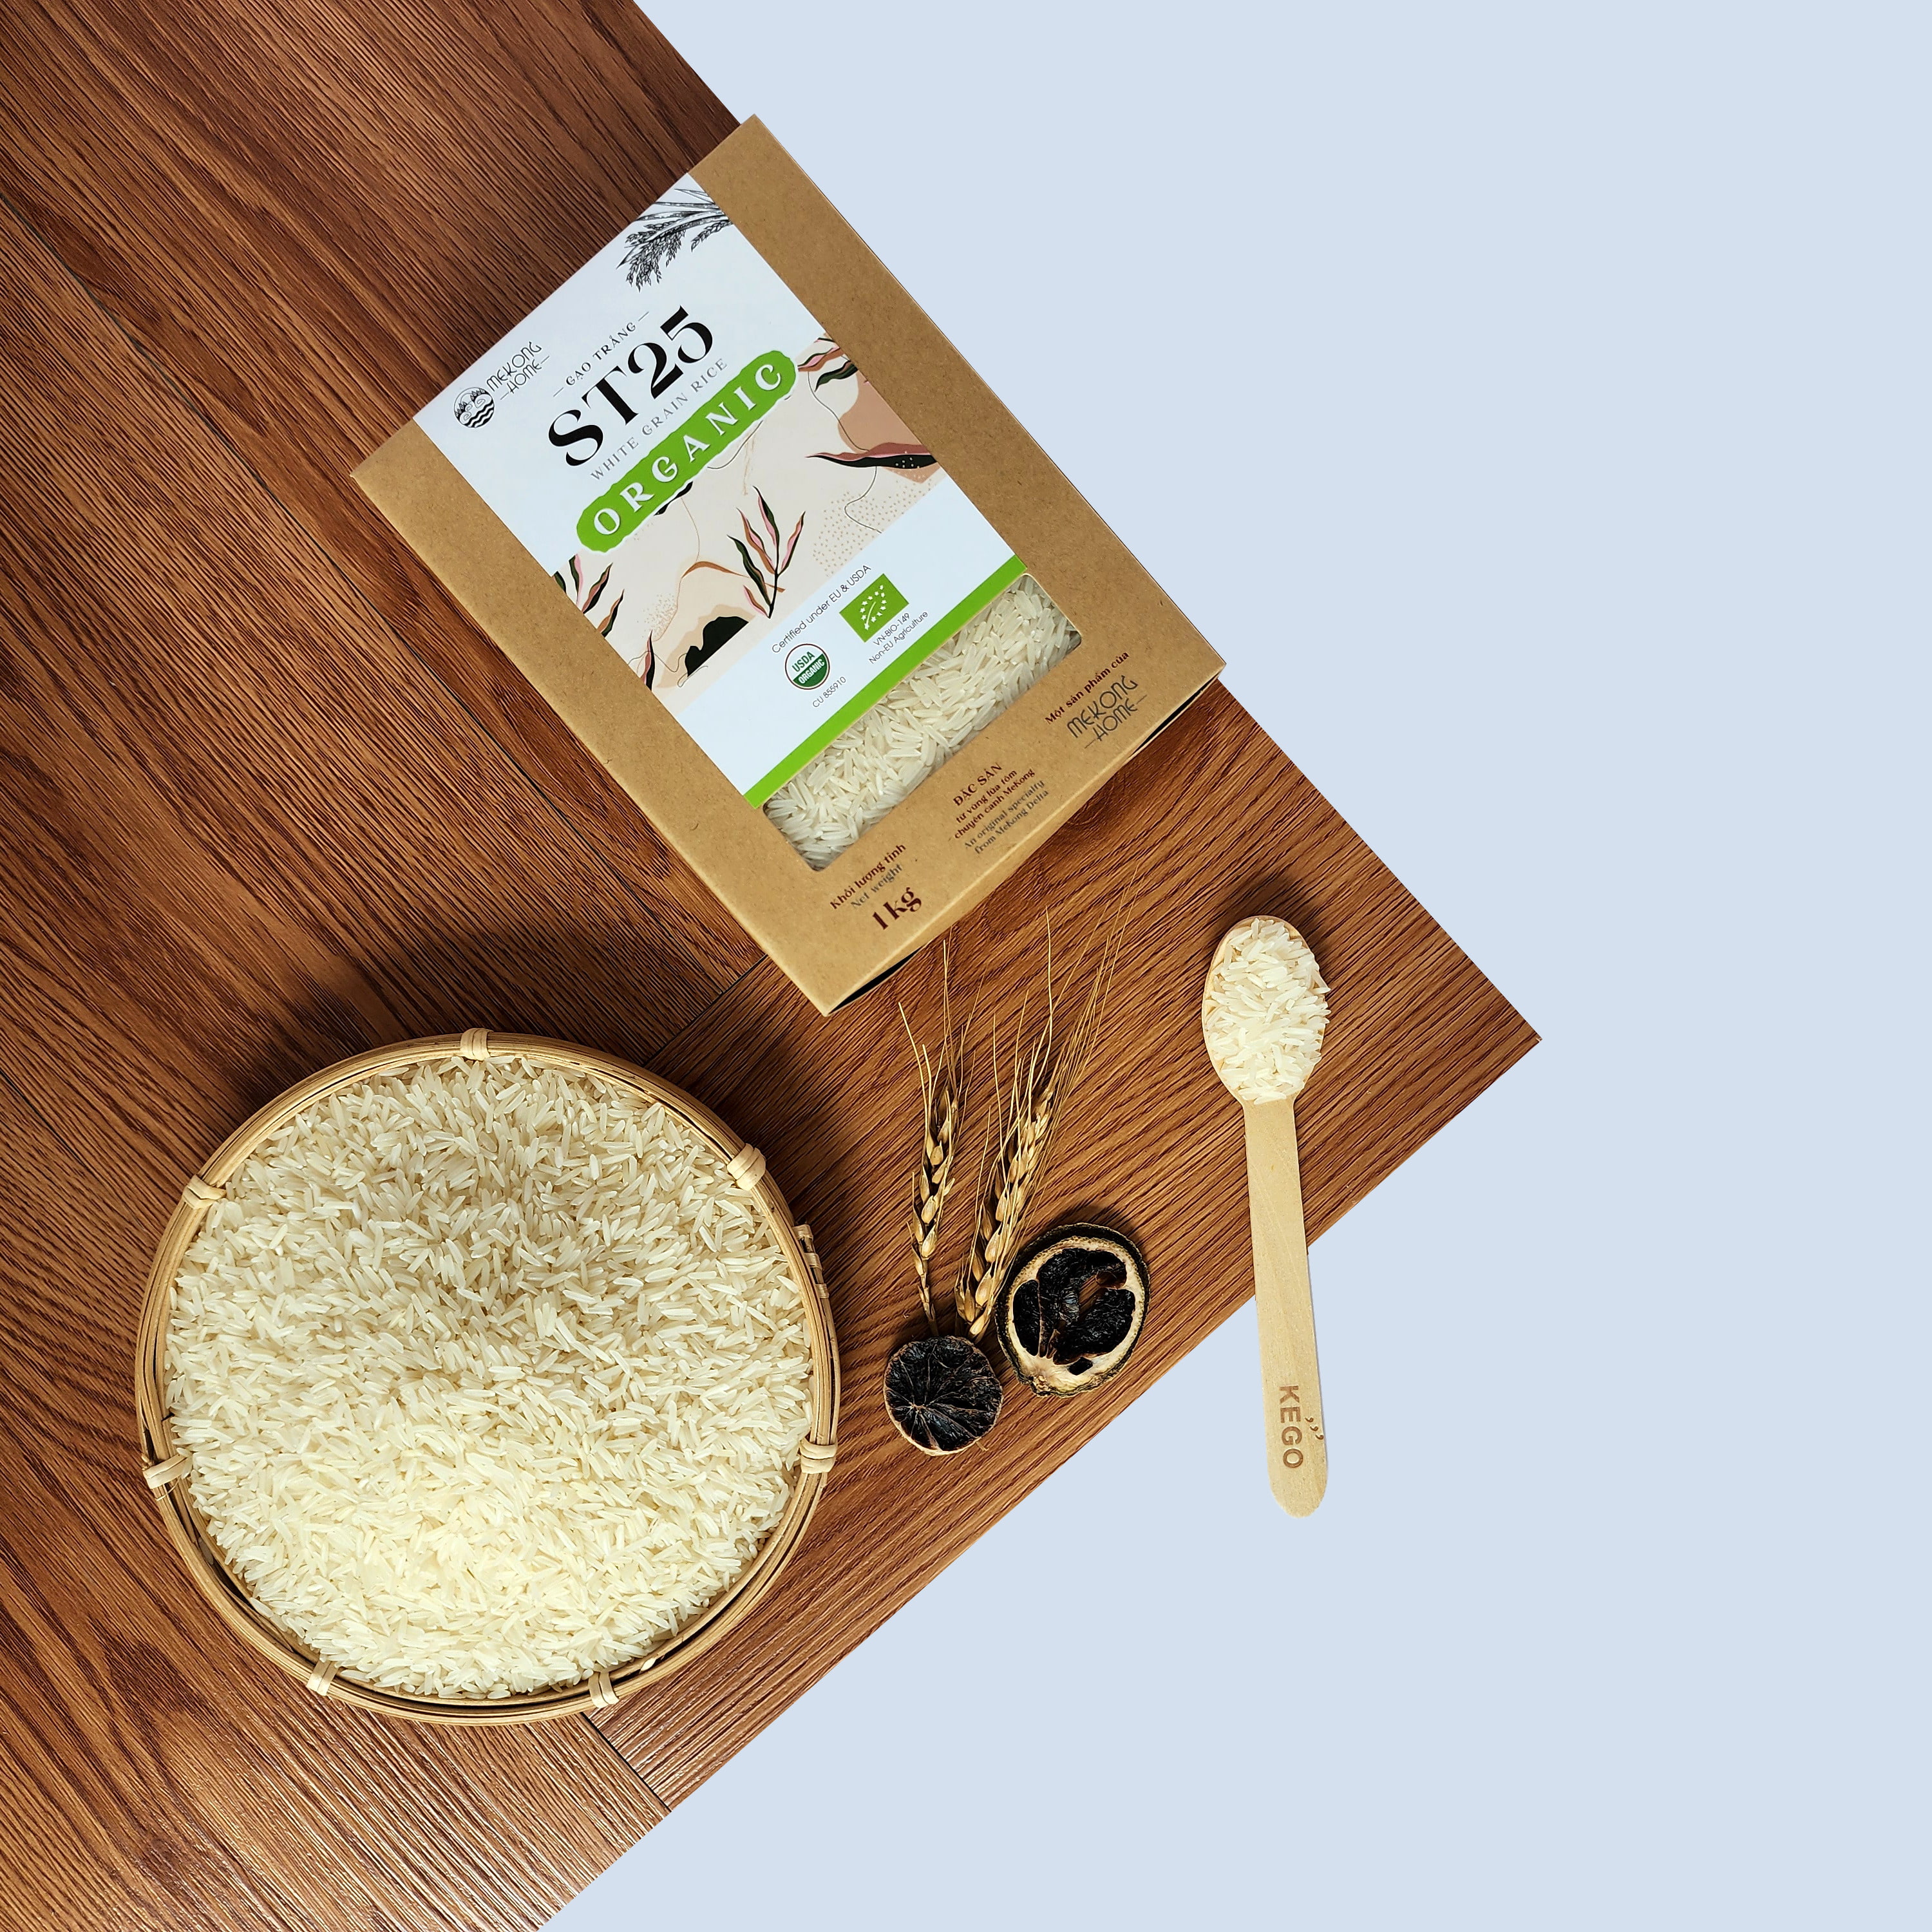 Gạo ST25 100% Organic, gạo chuẩn vị, dẻo, thơm tự nhiên, mùi ngọt nhẹ - 2kg